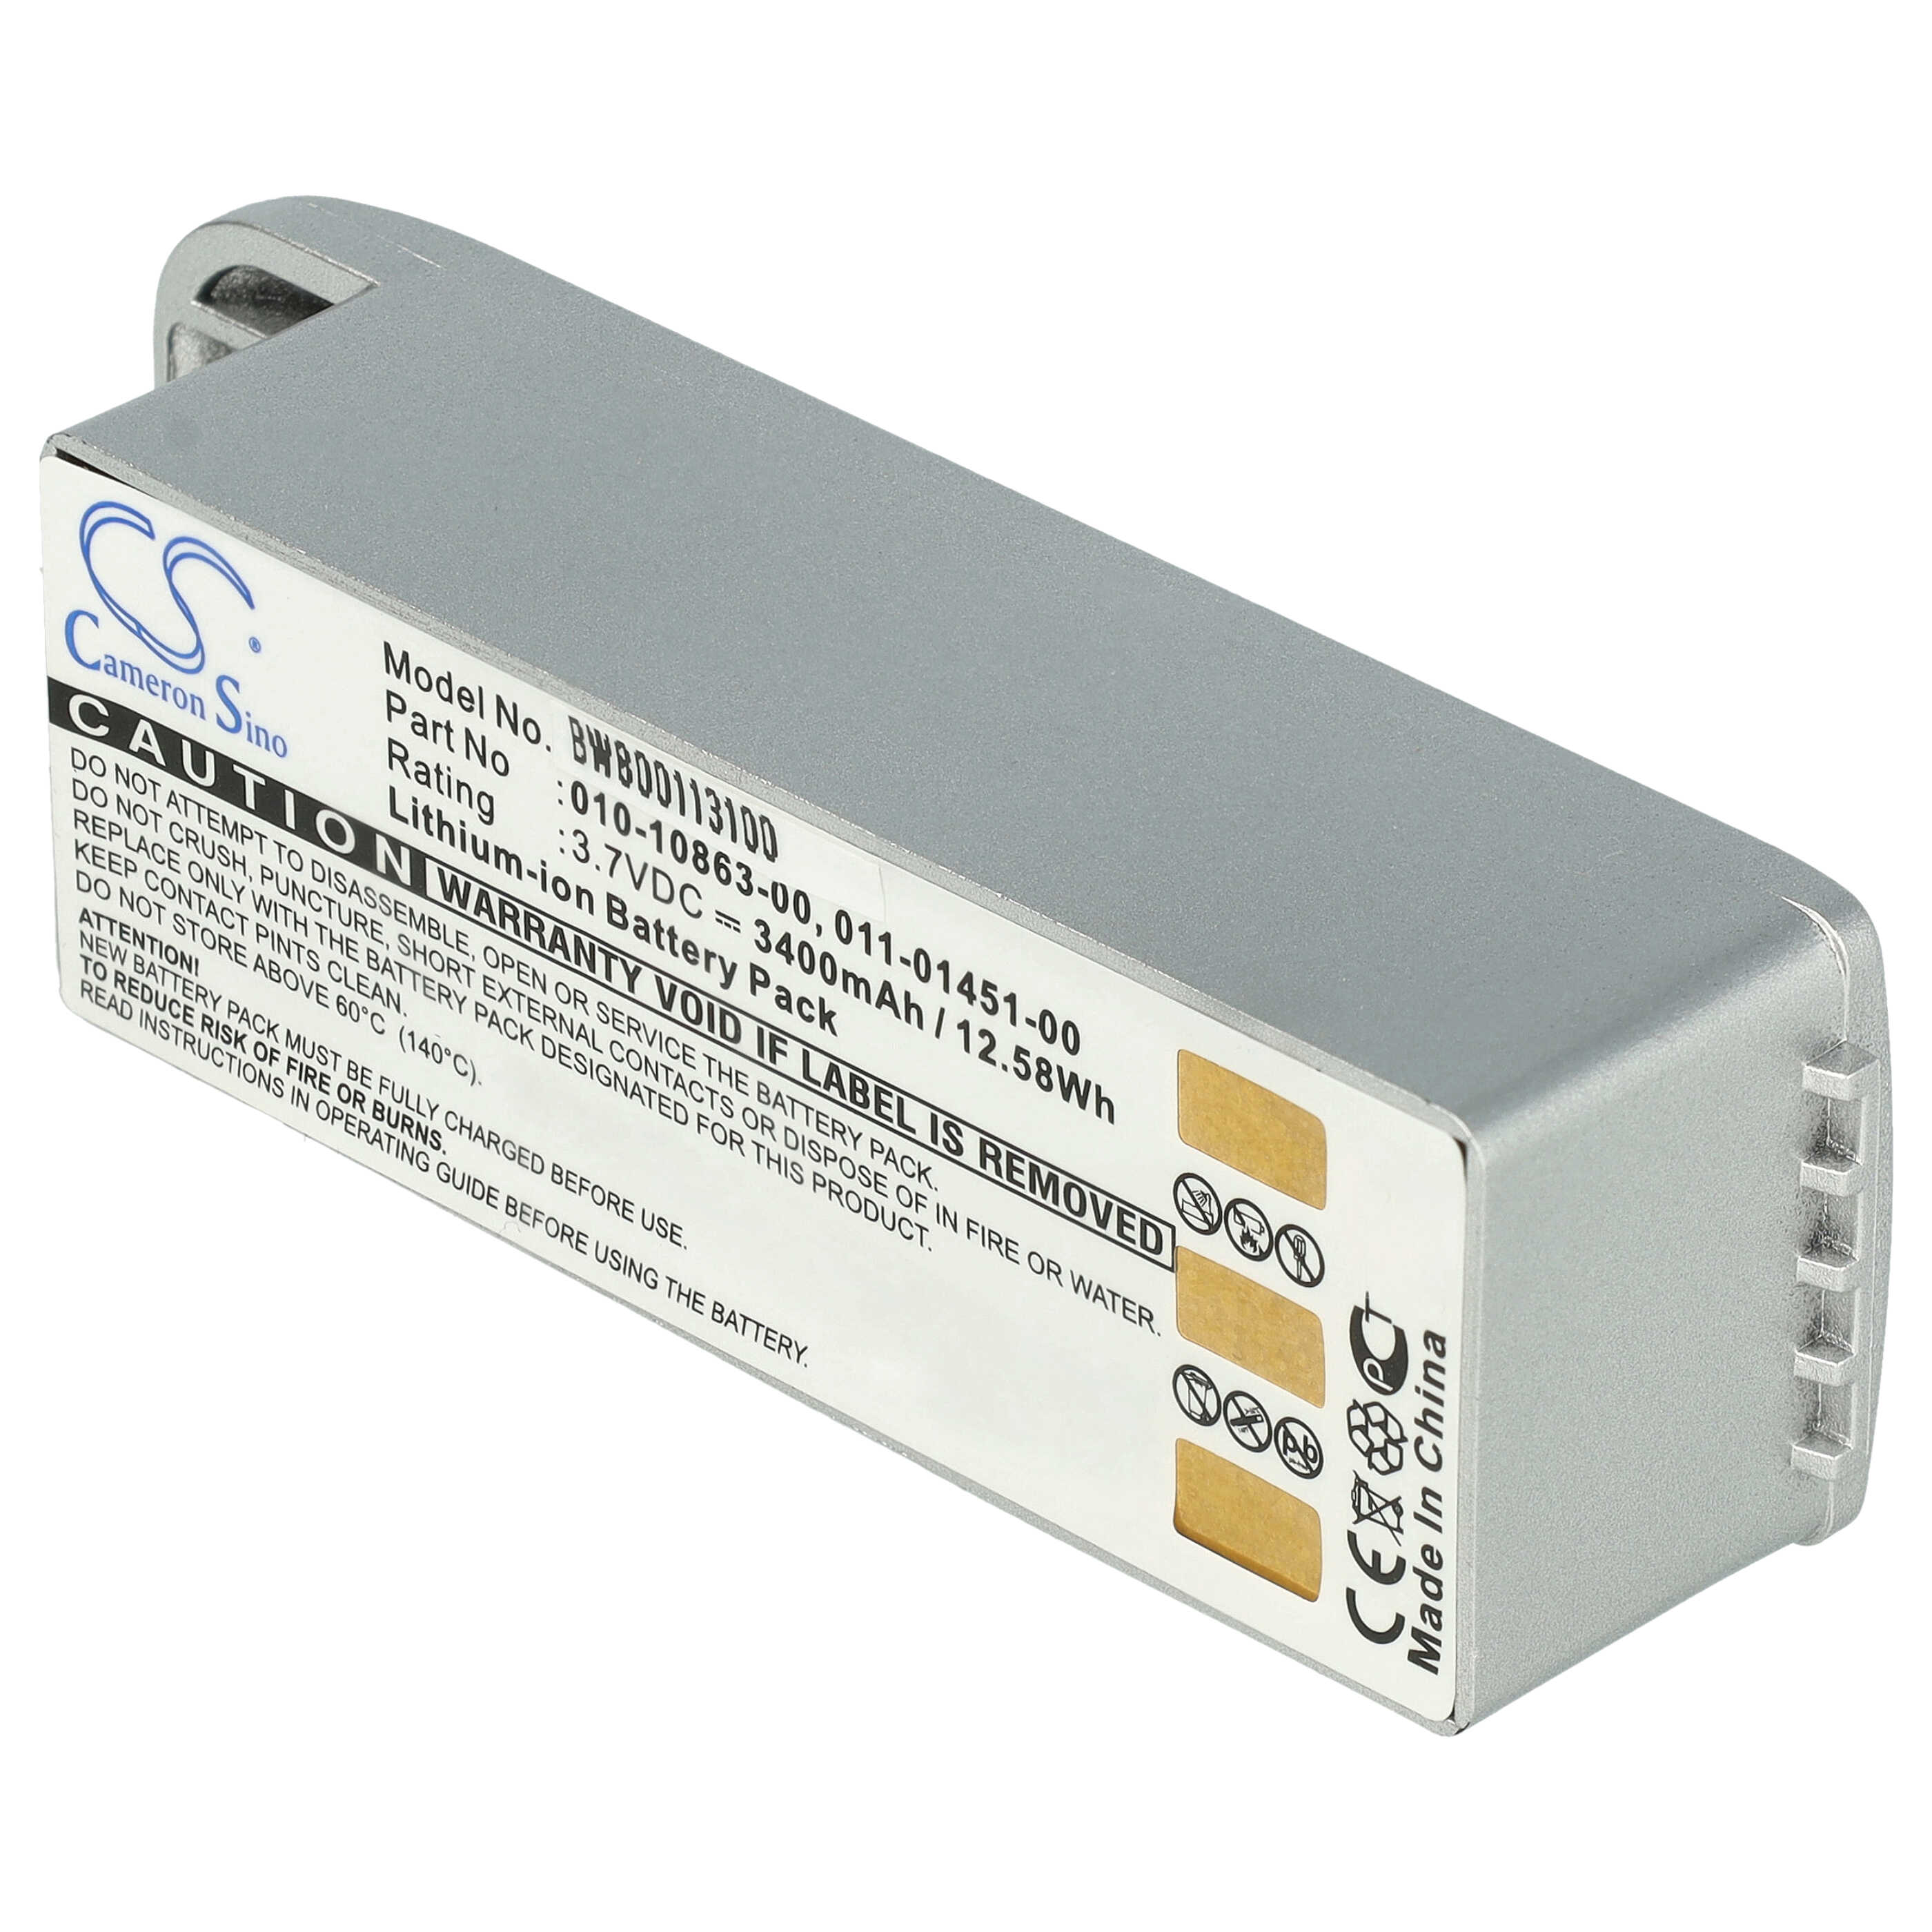 Batterie remplace Garmin 010-10863-00, 011-01451-00 pour navigation GPS - 3400mAh 3,7V Li-ion